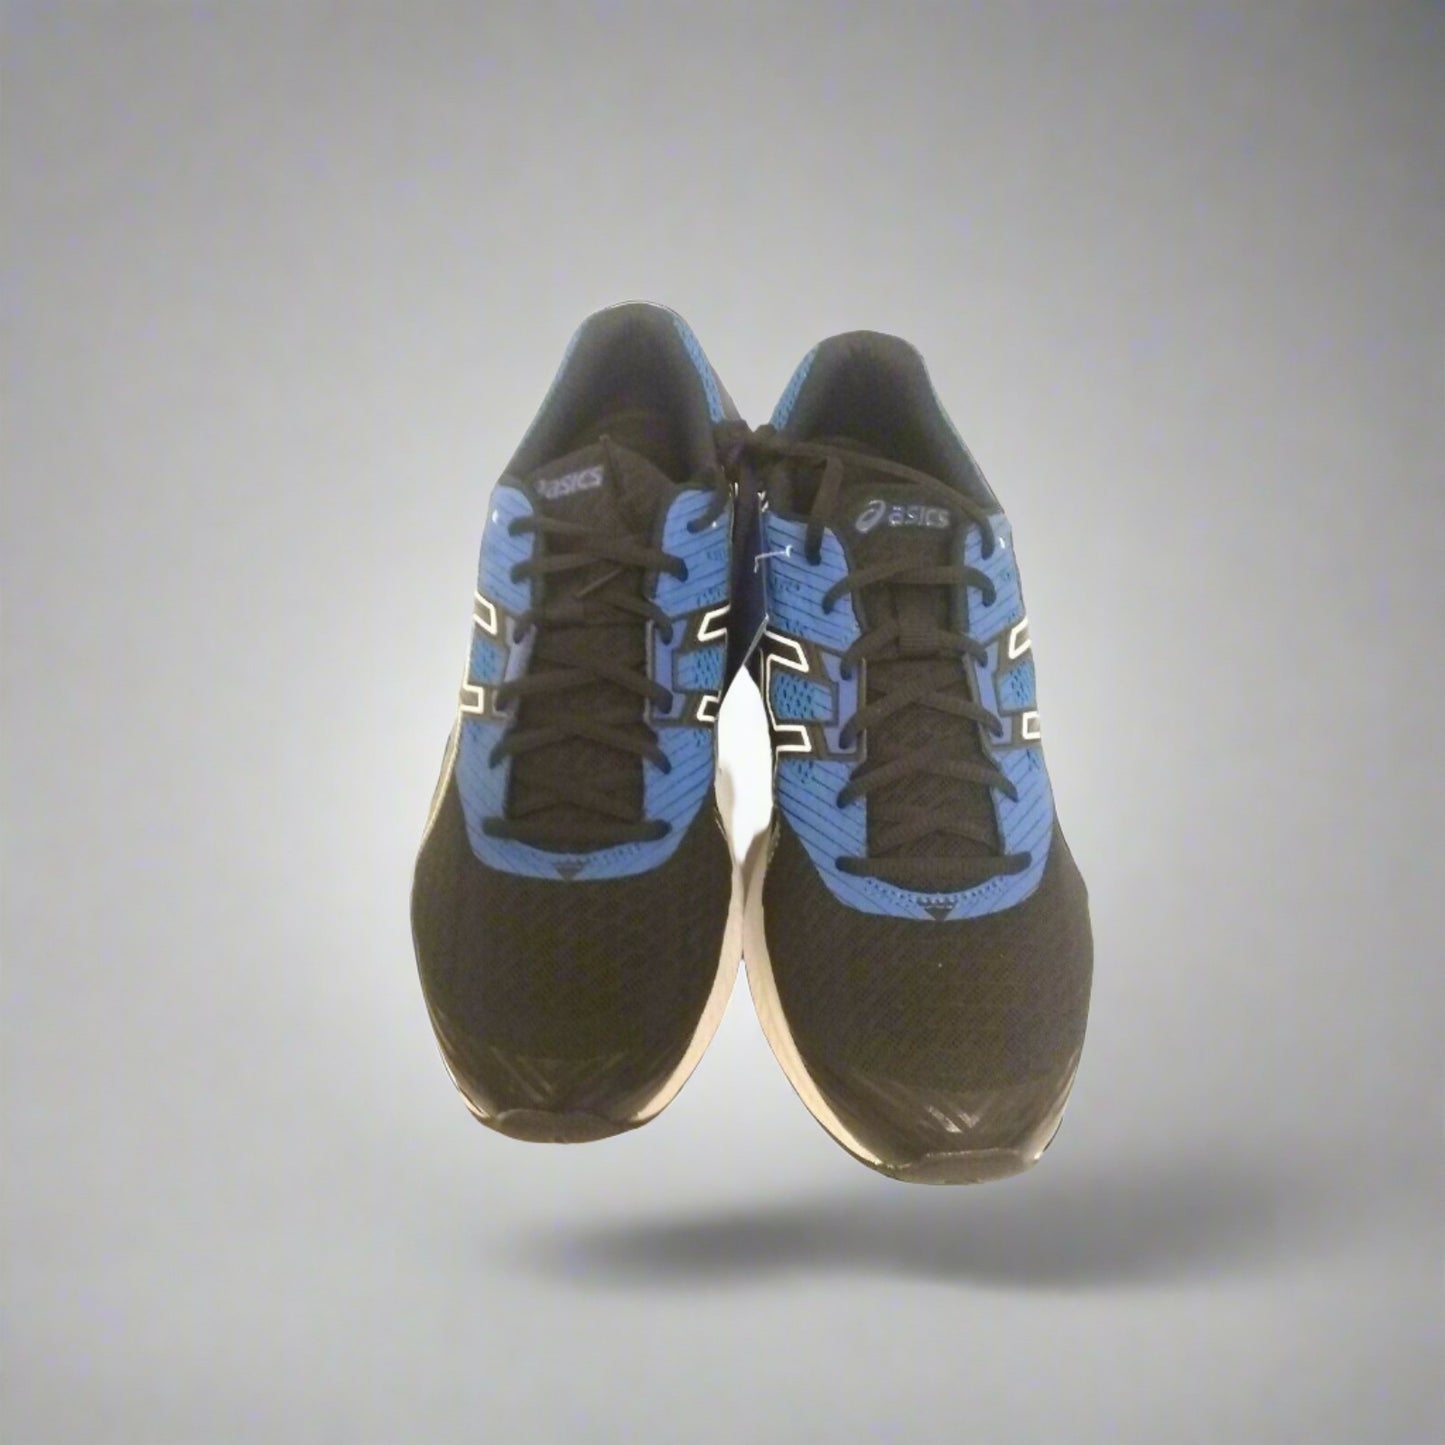 Asics Men's Shoes Gel 1 Black Blue running shoes Size 11.5 us - Classic Fashion DealsAsics Men's Shoes Gel 1 Black Blue running shoes Size 11.5 usASICSClassic Fashion DealsAsics Men's Shoes Gel 1 Black Blue running shoes Size 11.5 us